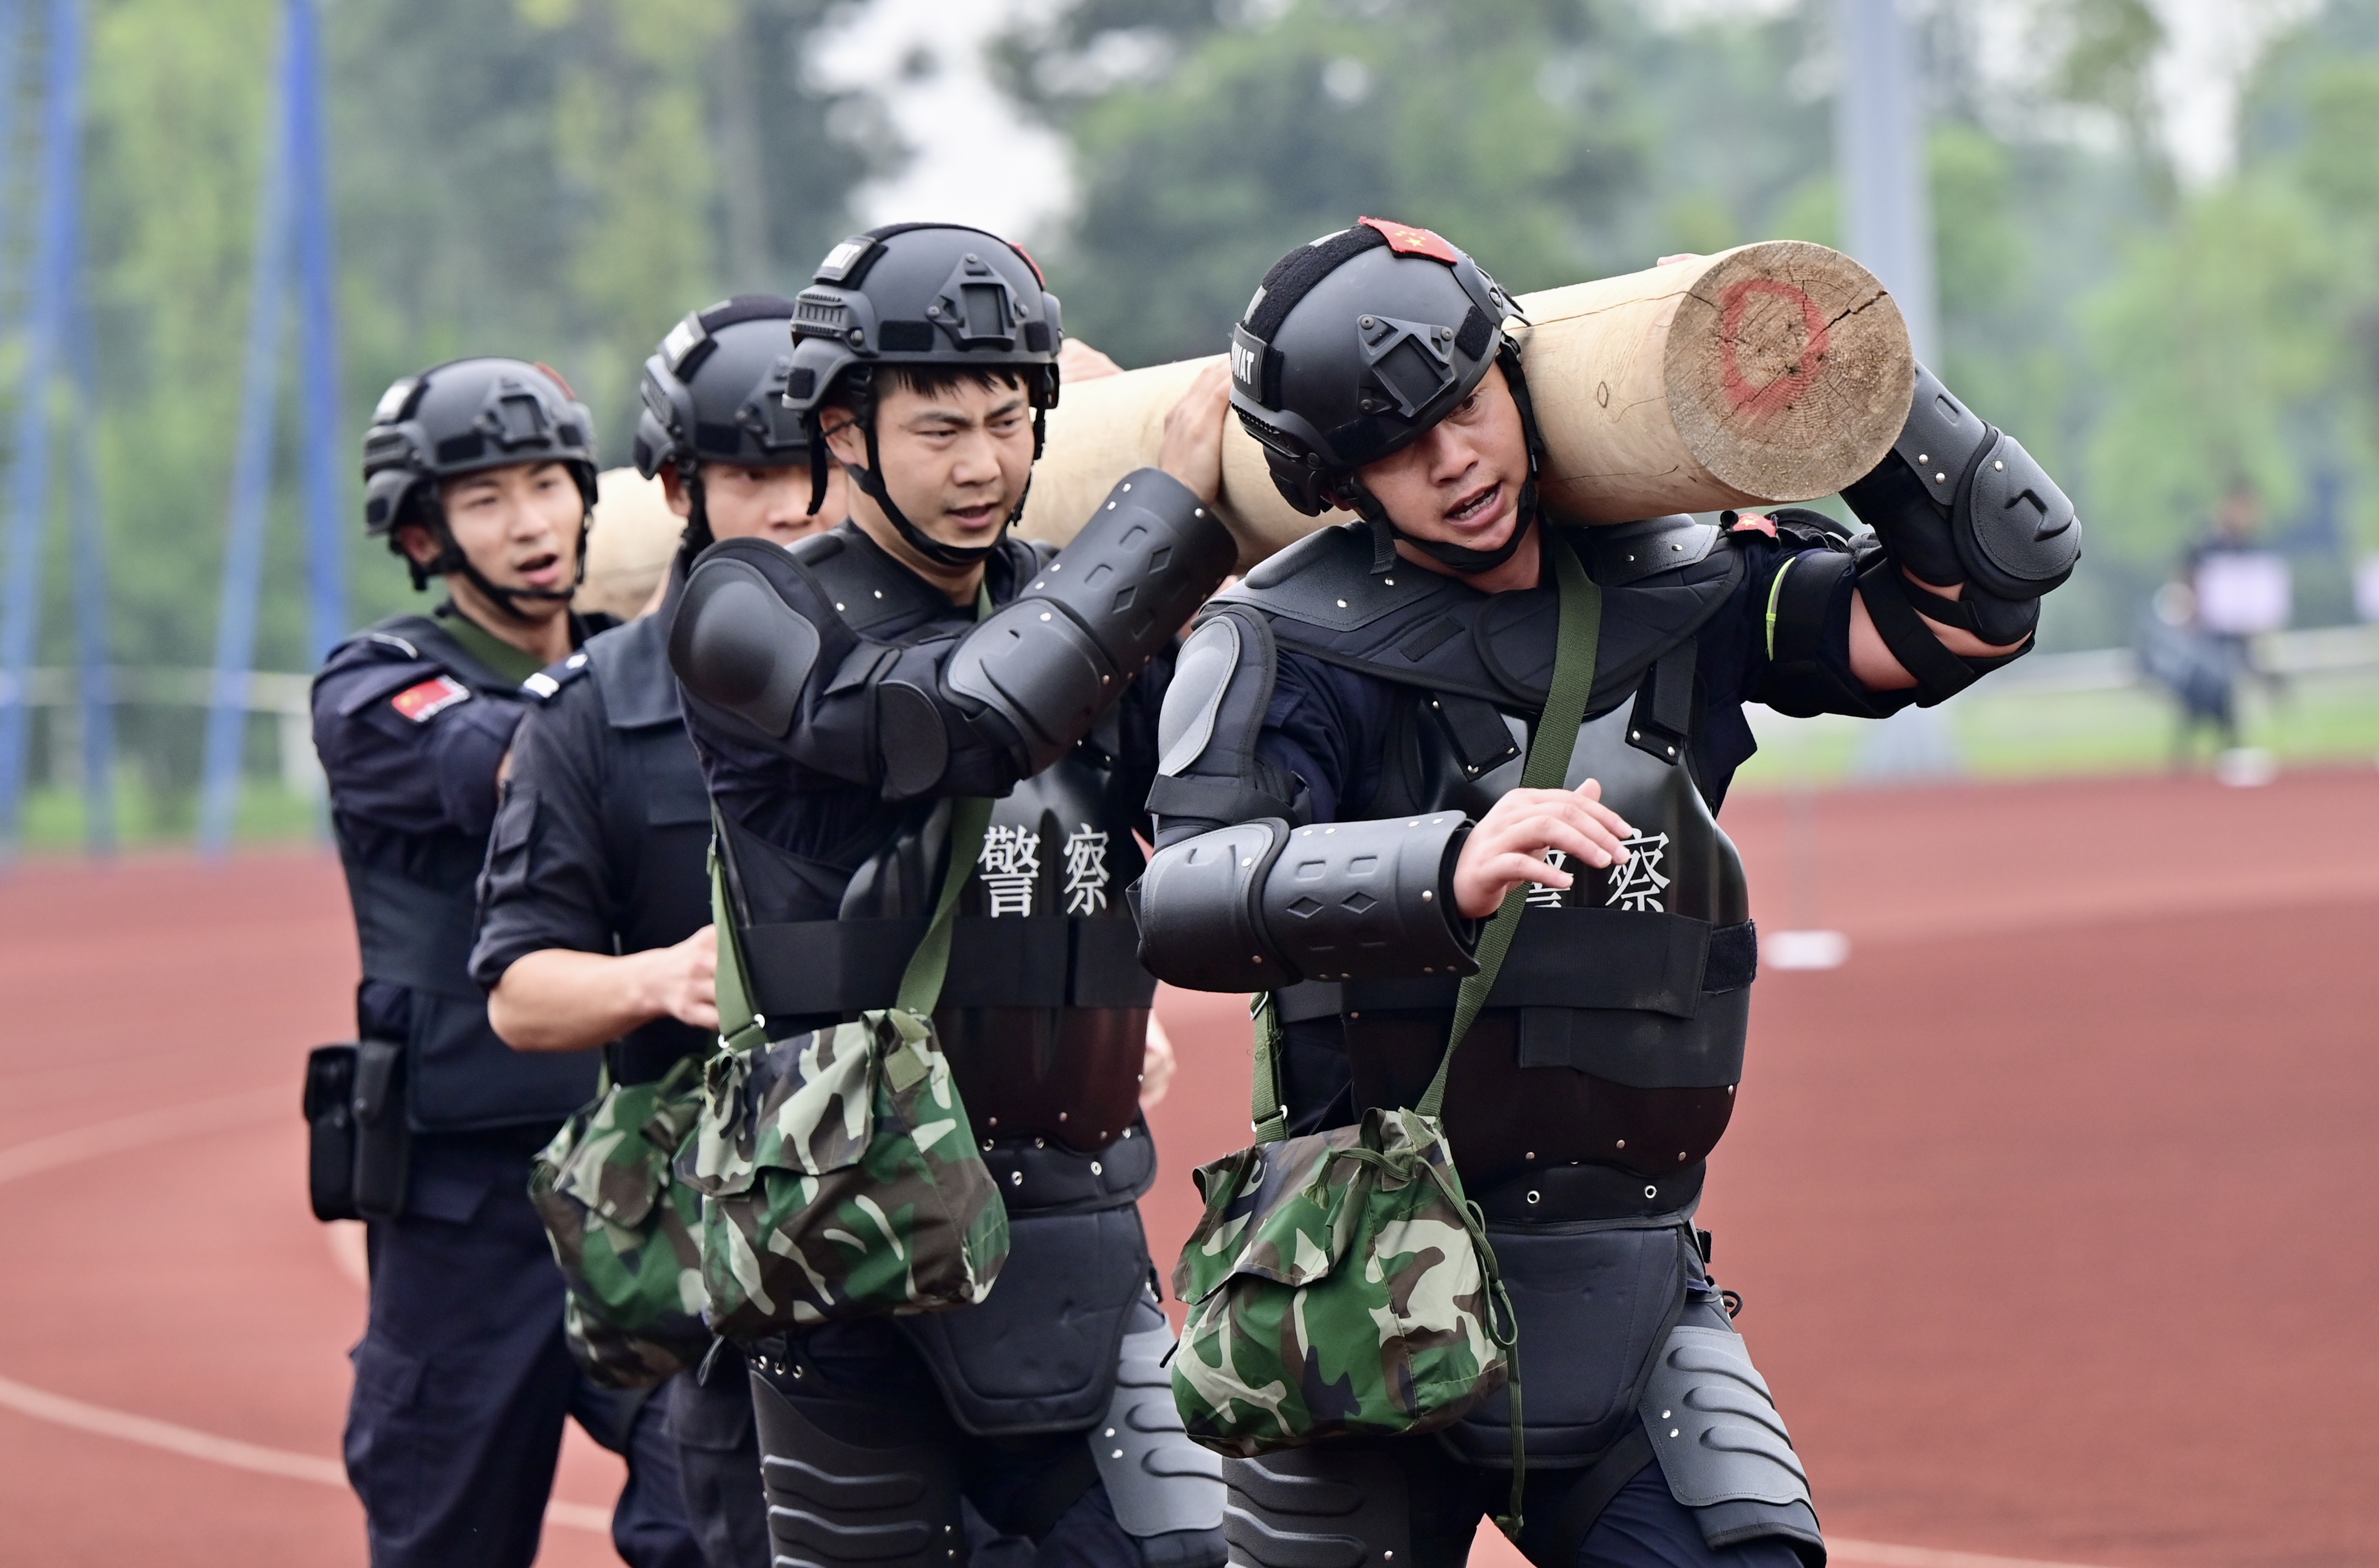 由四川省公安厅集中下达指令,拉动测试21市(州)公安特警突击队,排爆队